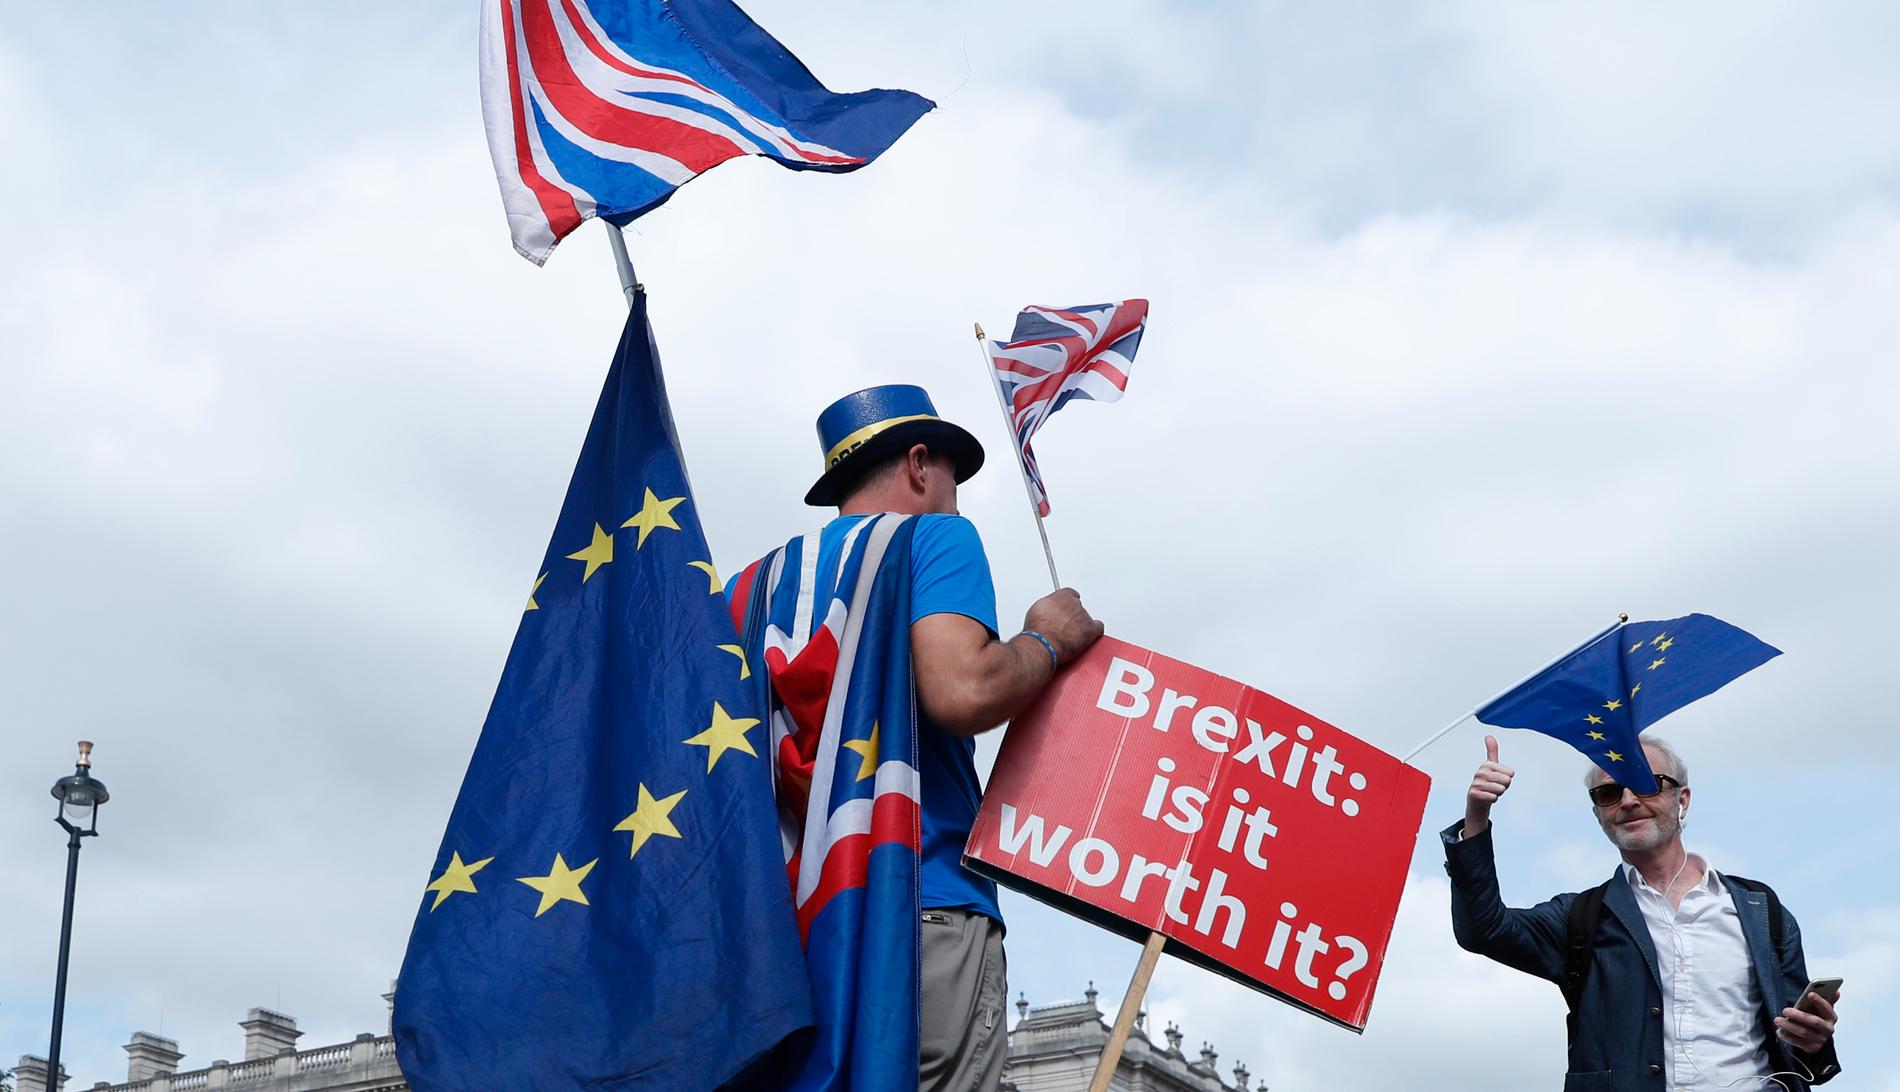 "Brexit – är det värt det?", frågar en anhängare av den sida som vill att Storbritannien ska stoppa utträdesprocessen ur EU. Tiden är nu knapp för London att nå en uppgörelse med Bryssel för att undvika att Storbritannien "kraschar" ut ur EU utan avtal.